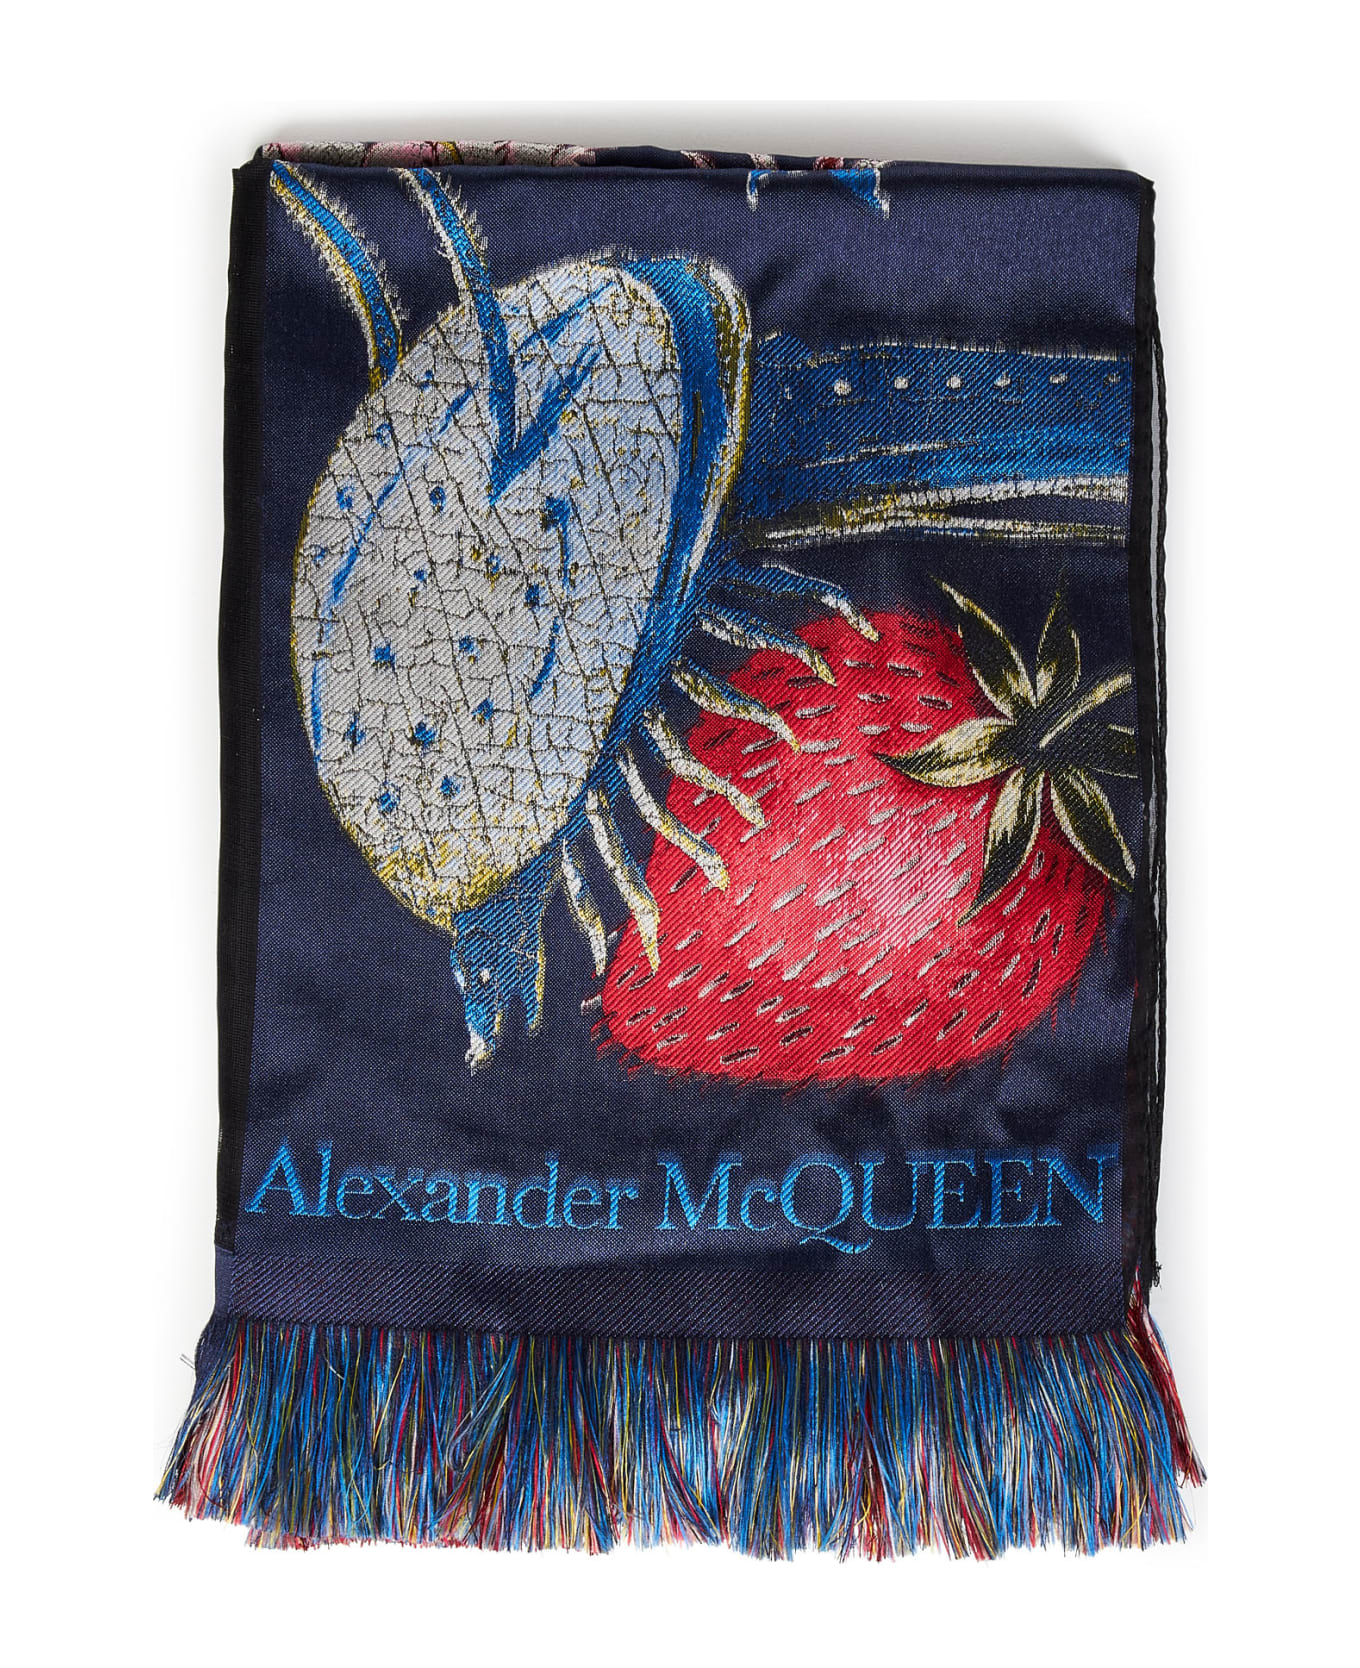 Alexander McQueen Hieronymus Bosch Scarf - Blue